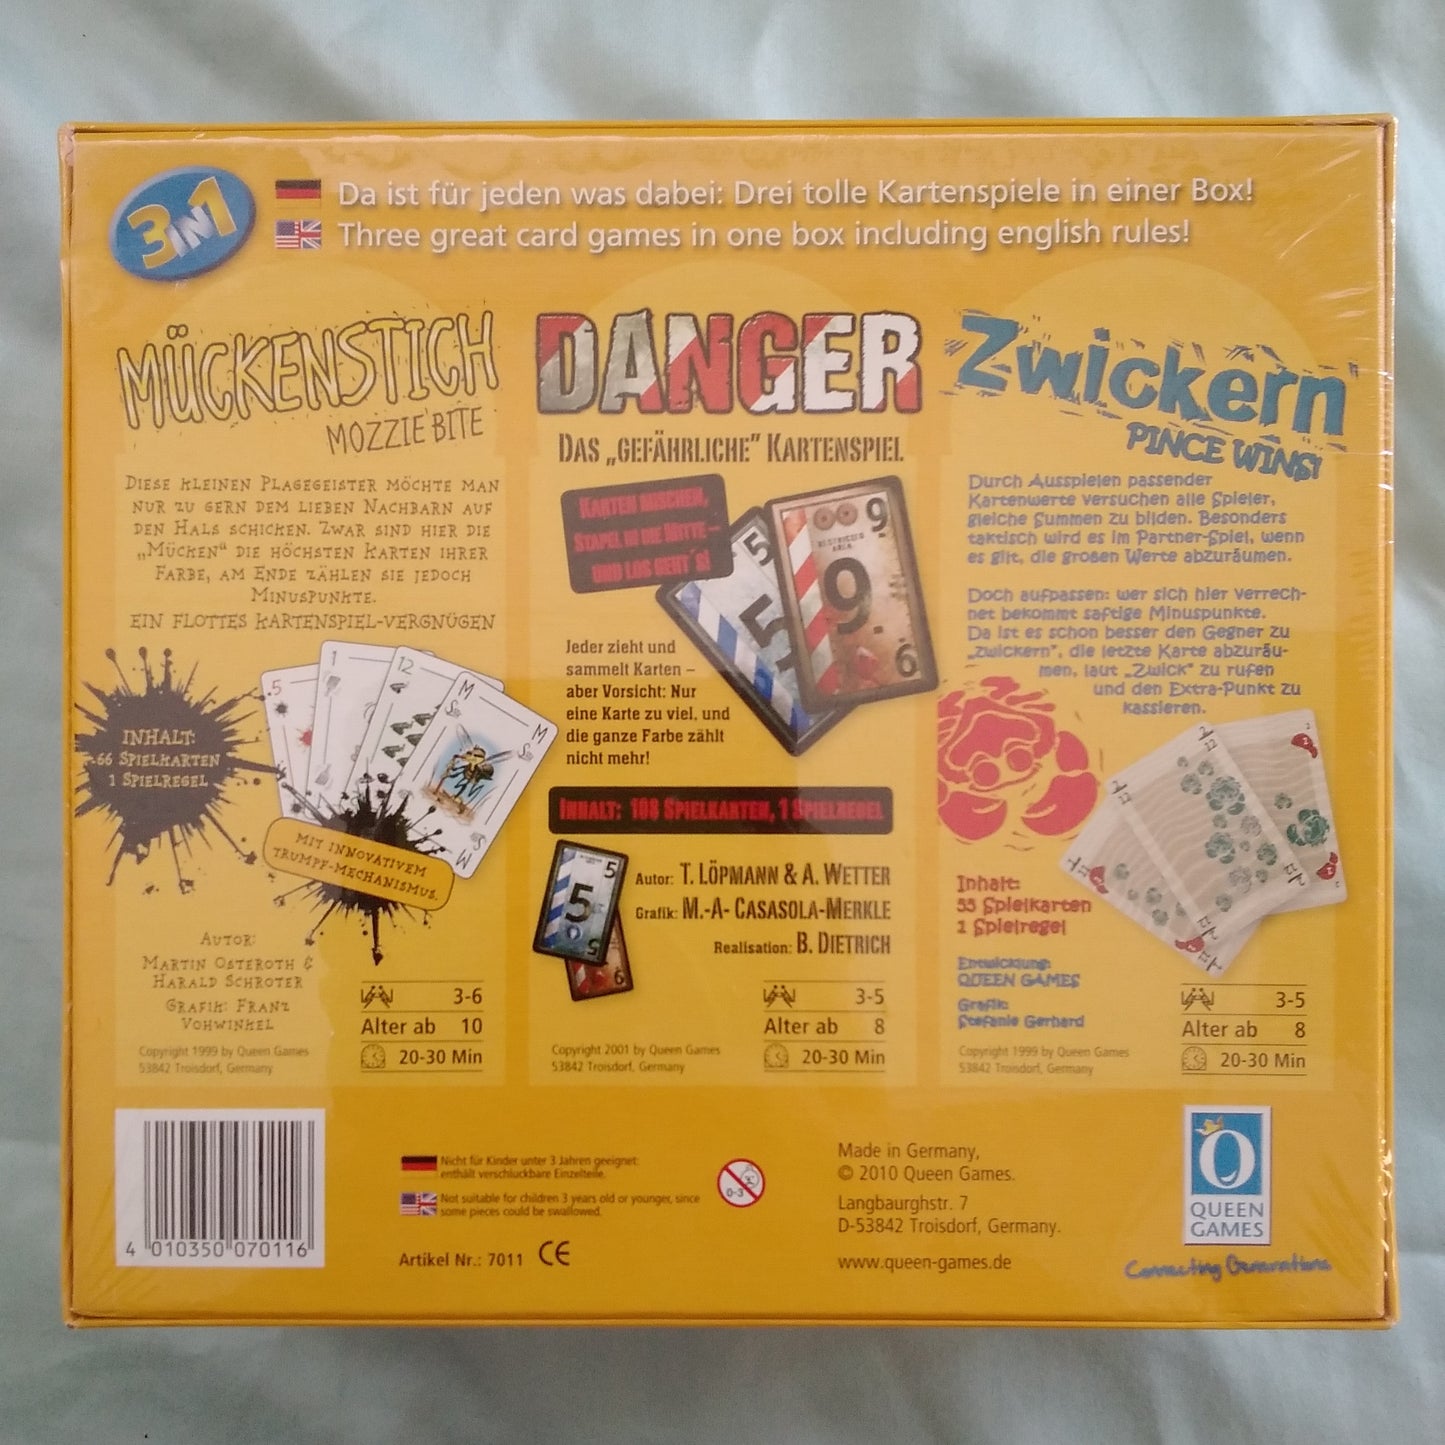 Muckenstich-Danger-Zwickern 3 in 1 Card Game